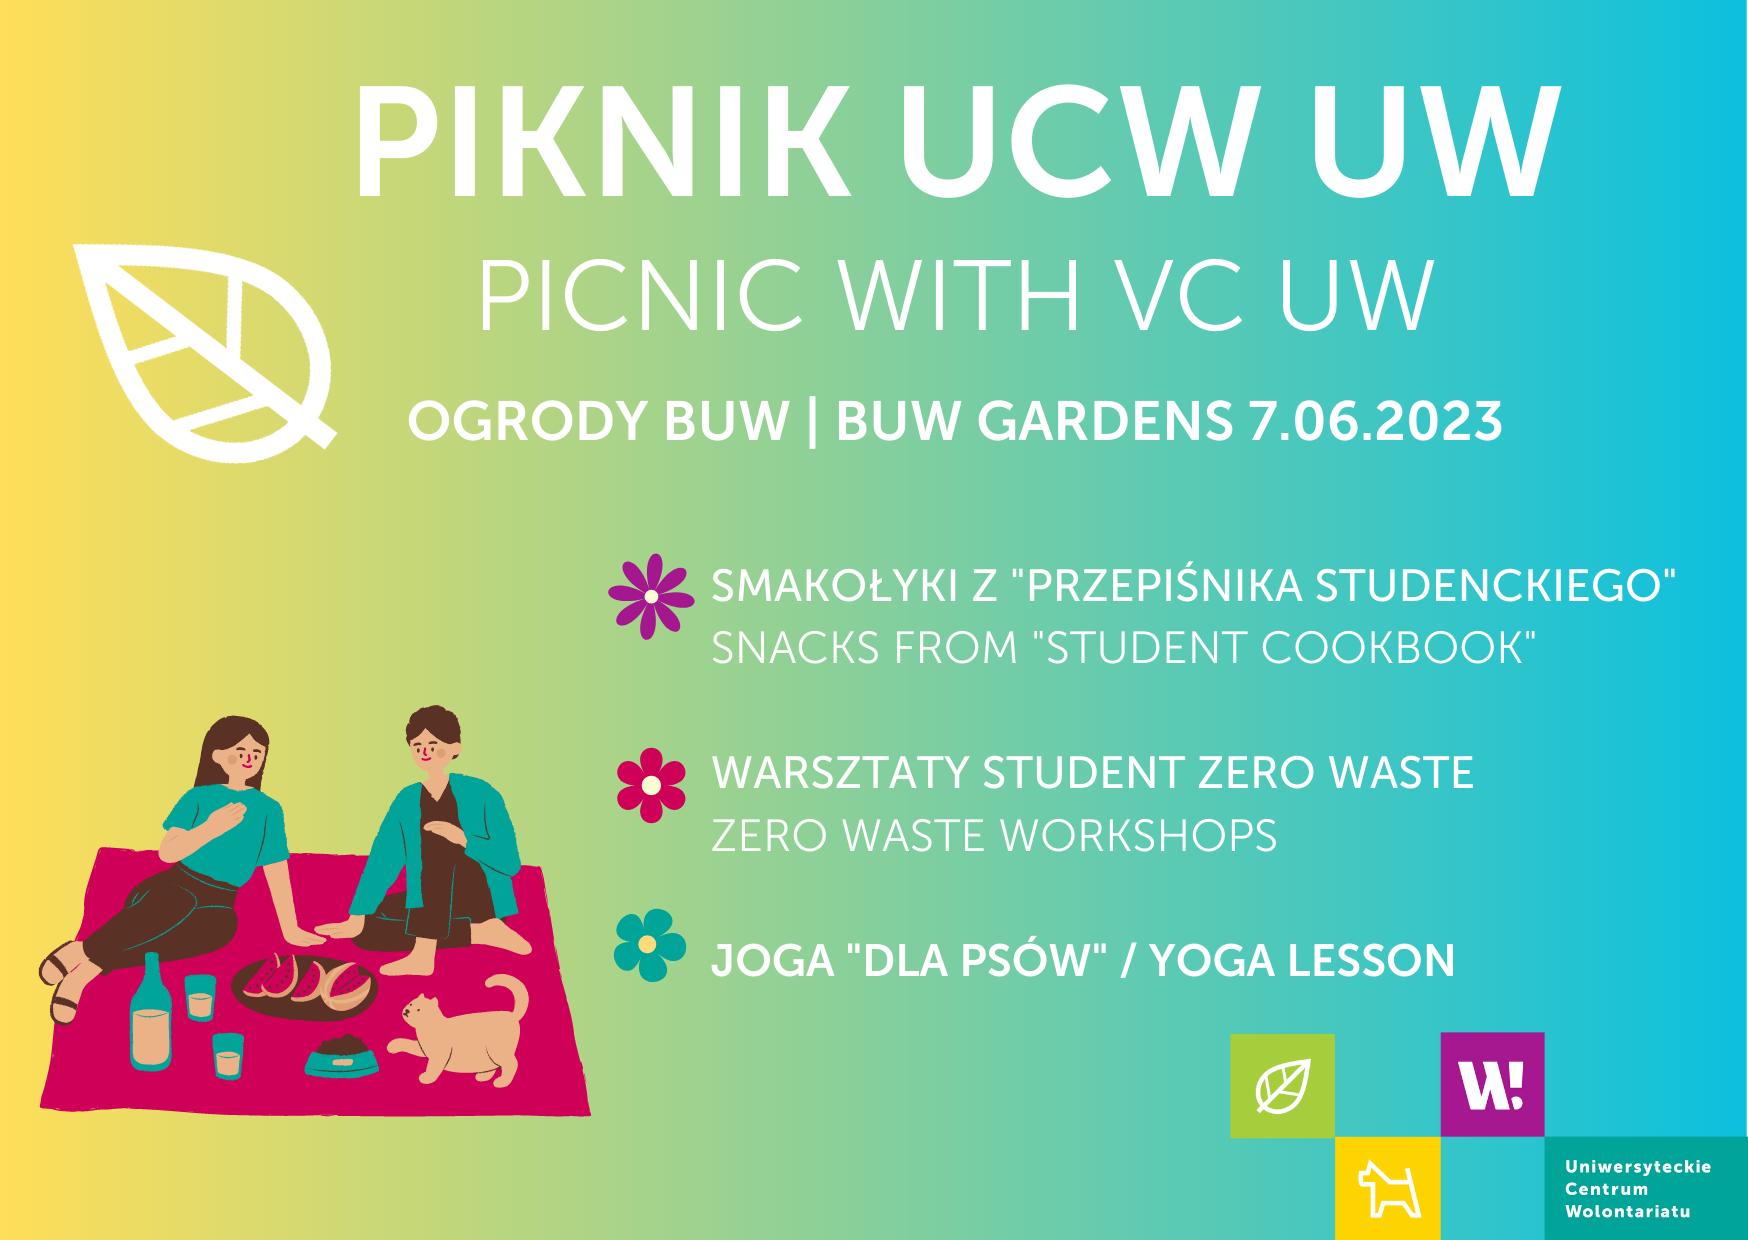 Grafika promująca wydarzenie Piknik UCW UW w ogrodach BUW 7 czerwca 2023 na grafice znajduje się obrazek przedstawiający studentkę i studenta na kocu piknikowym